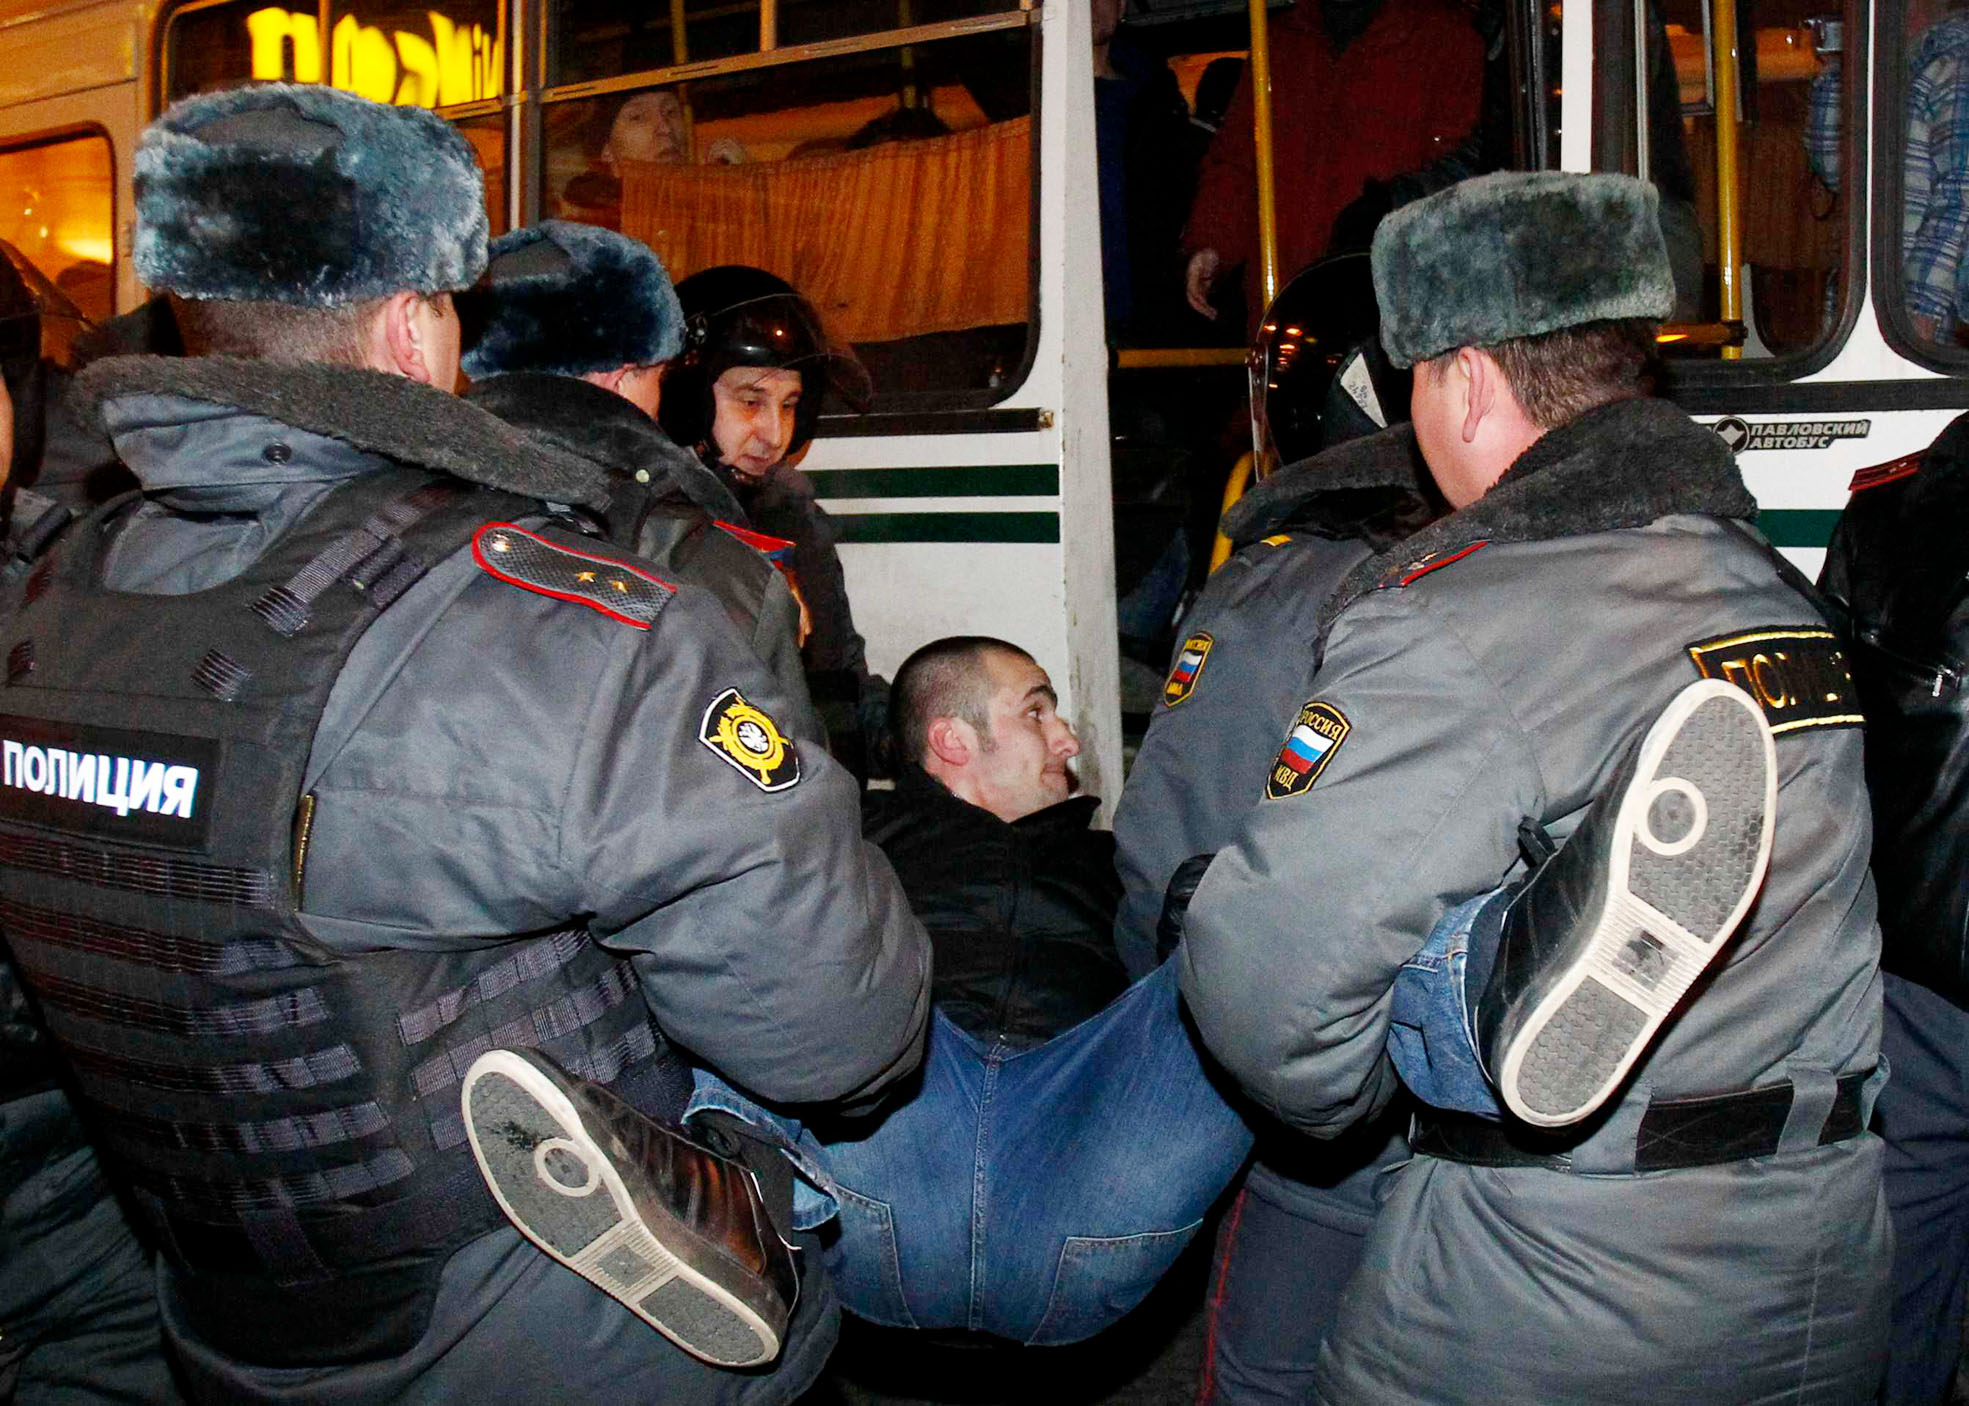 Ellenzéki tüntetőt őrizetbe vevő rendőrök Moszkvában. A párt alól kicsúszhat a talaj?